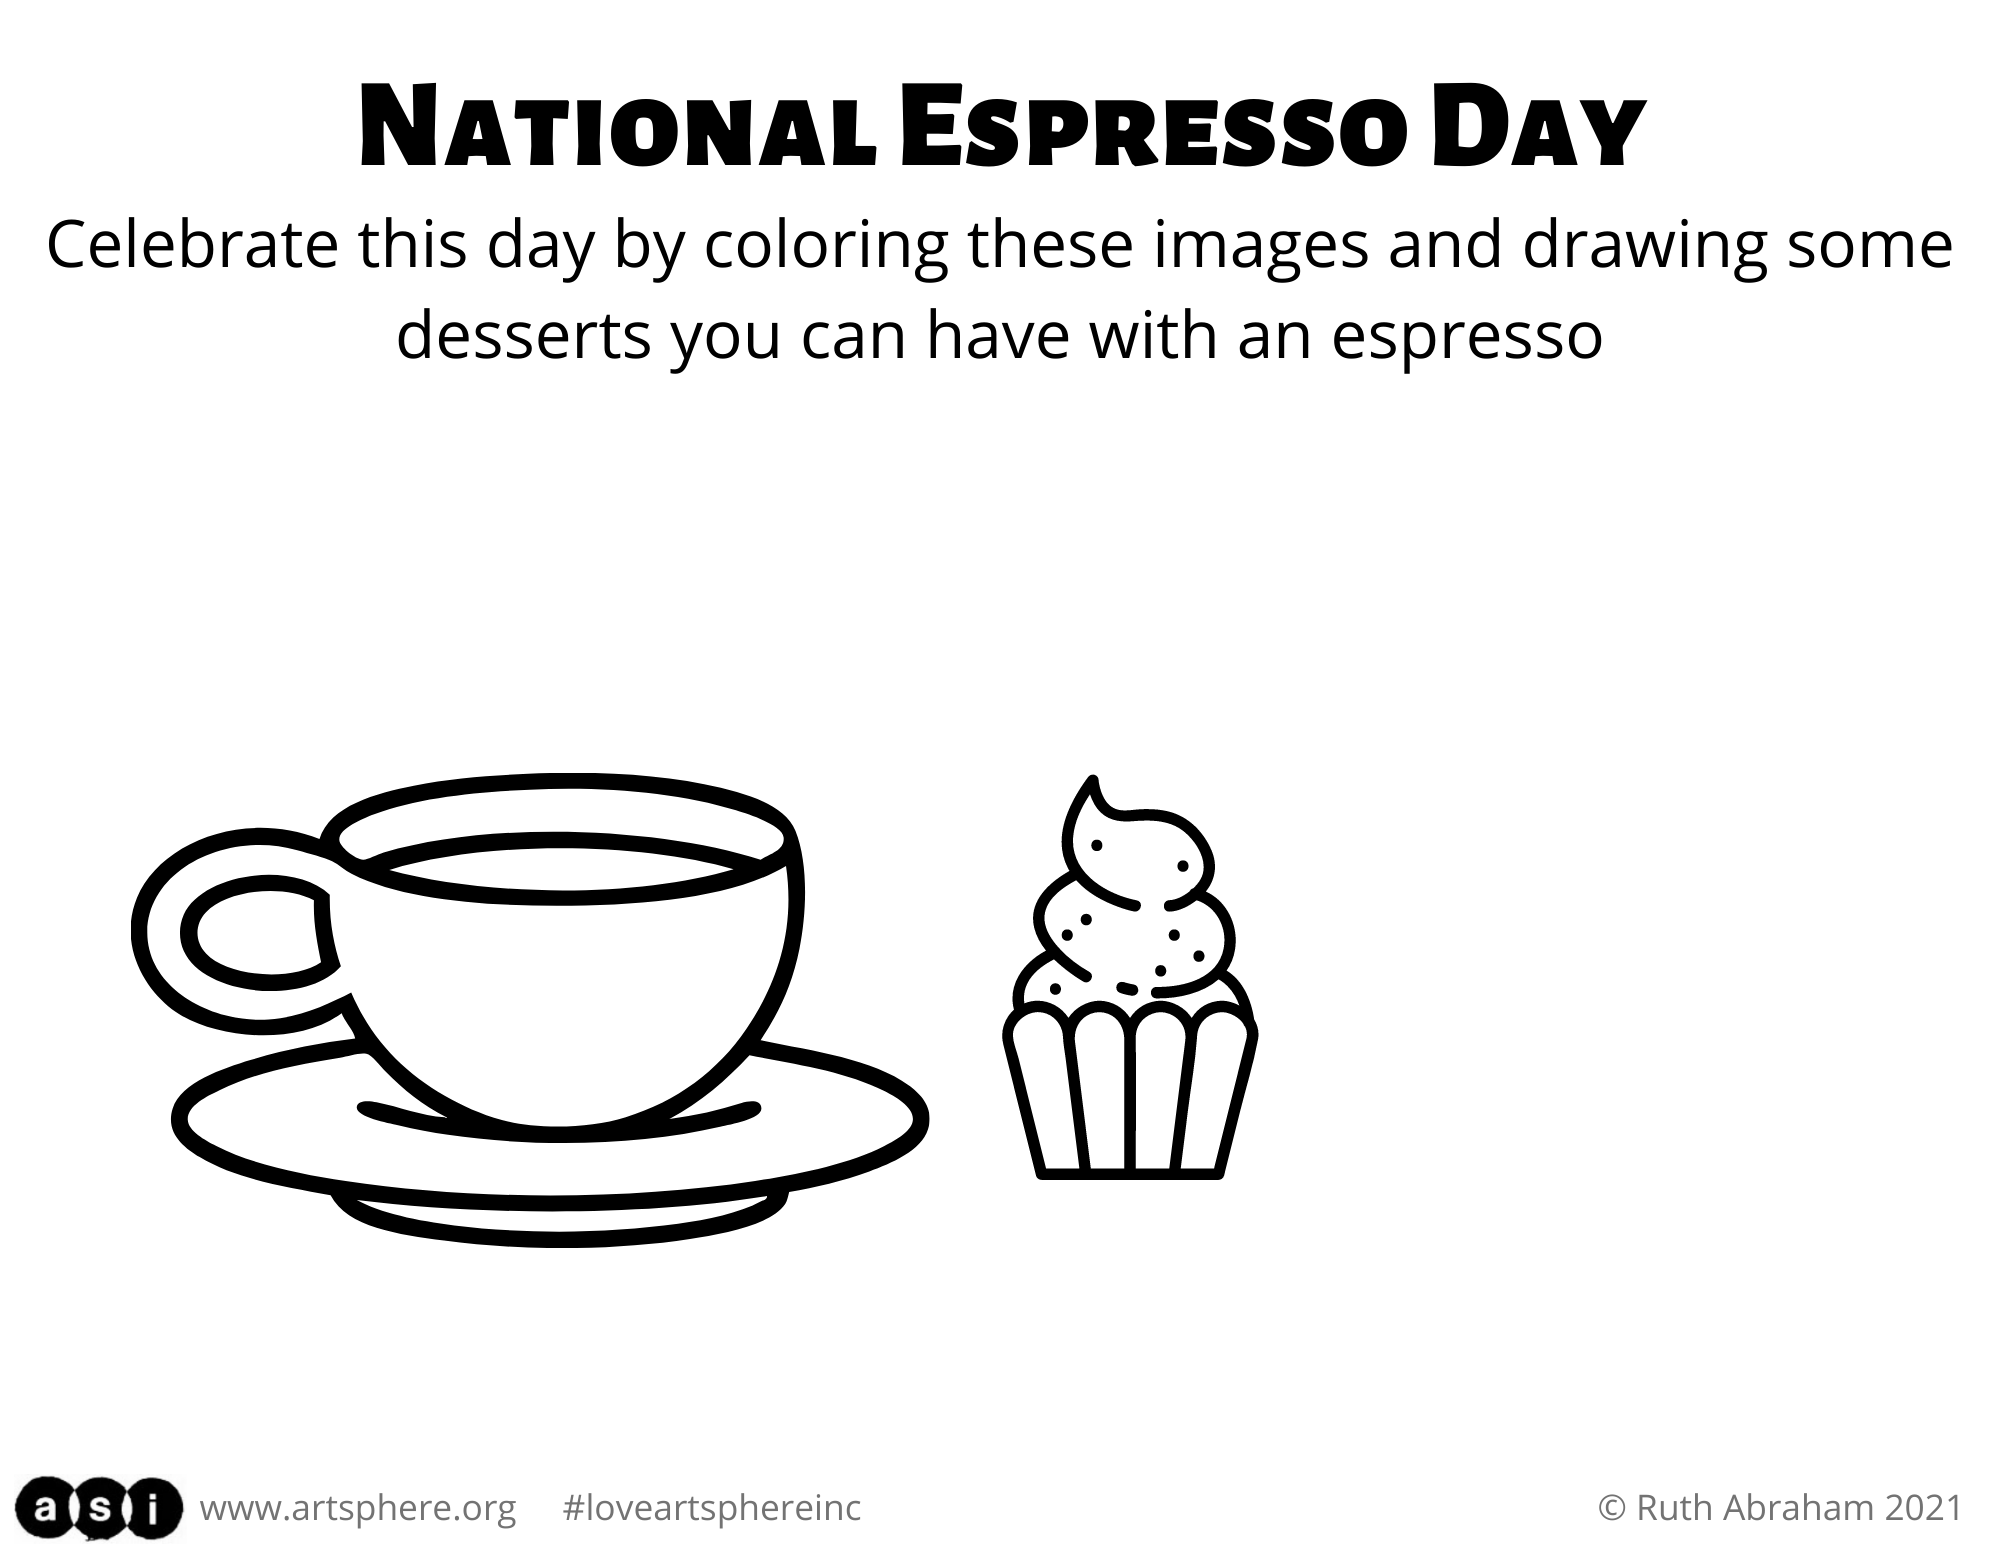 Mr Coffee: You've Got Espresso Mail! It's National Espresso Day